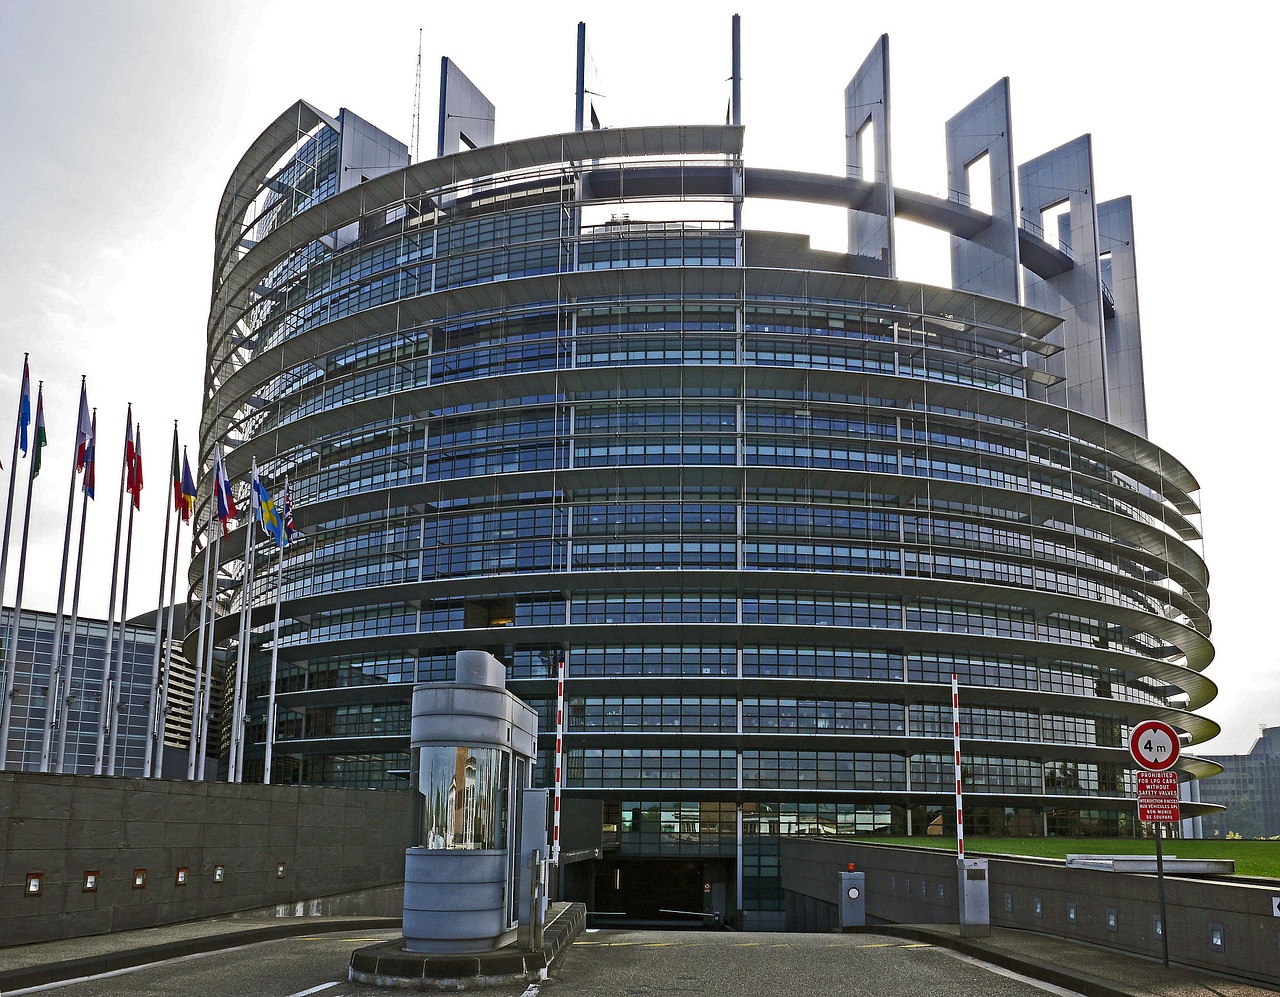 Europos Parlamentas, Strasbourg, Europos Sąjunga, Eu, Ue, Rotunda, Įvesties Sritis, Požeminė Automobilių Stovėjimo Aikštelė, Garažo Važiuojamosios Kelio Dalies, Pateikti